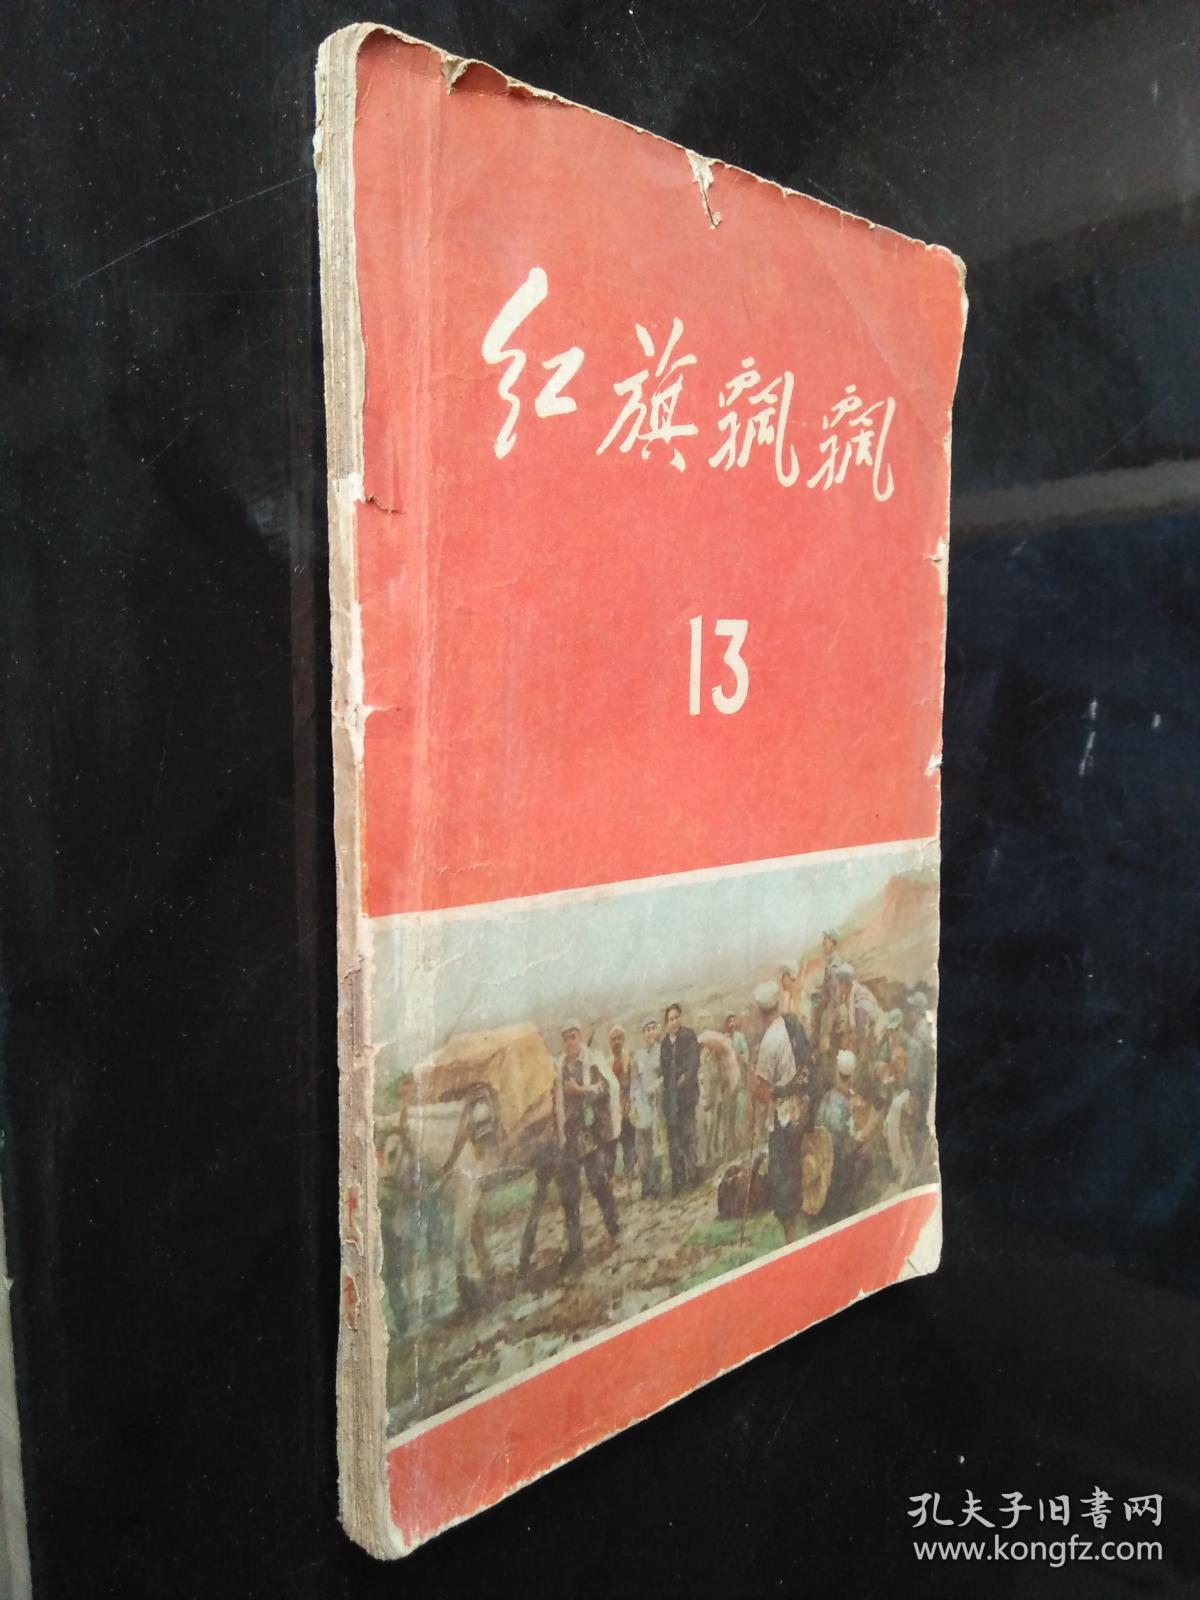 红旗飘飘(第13集)1959年一版2印 刊有黄永胜、